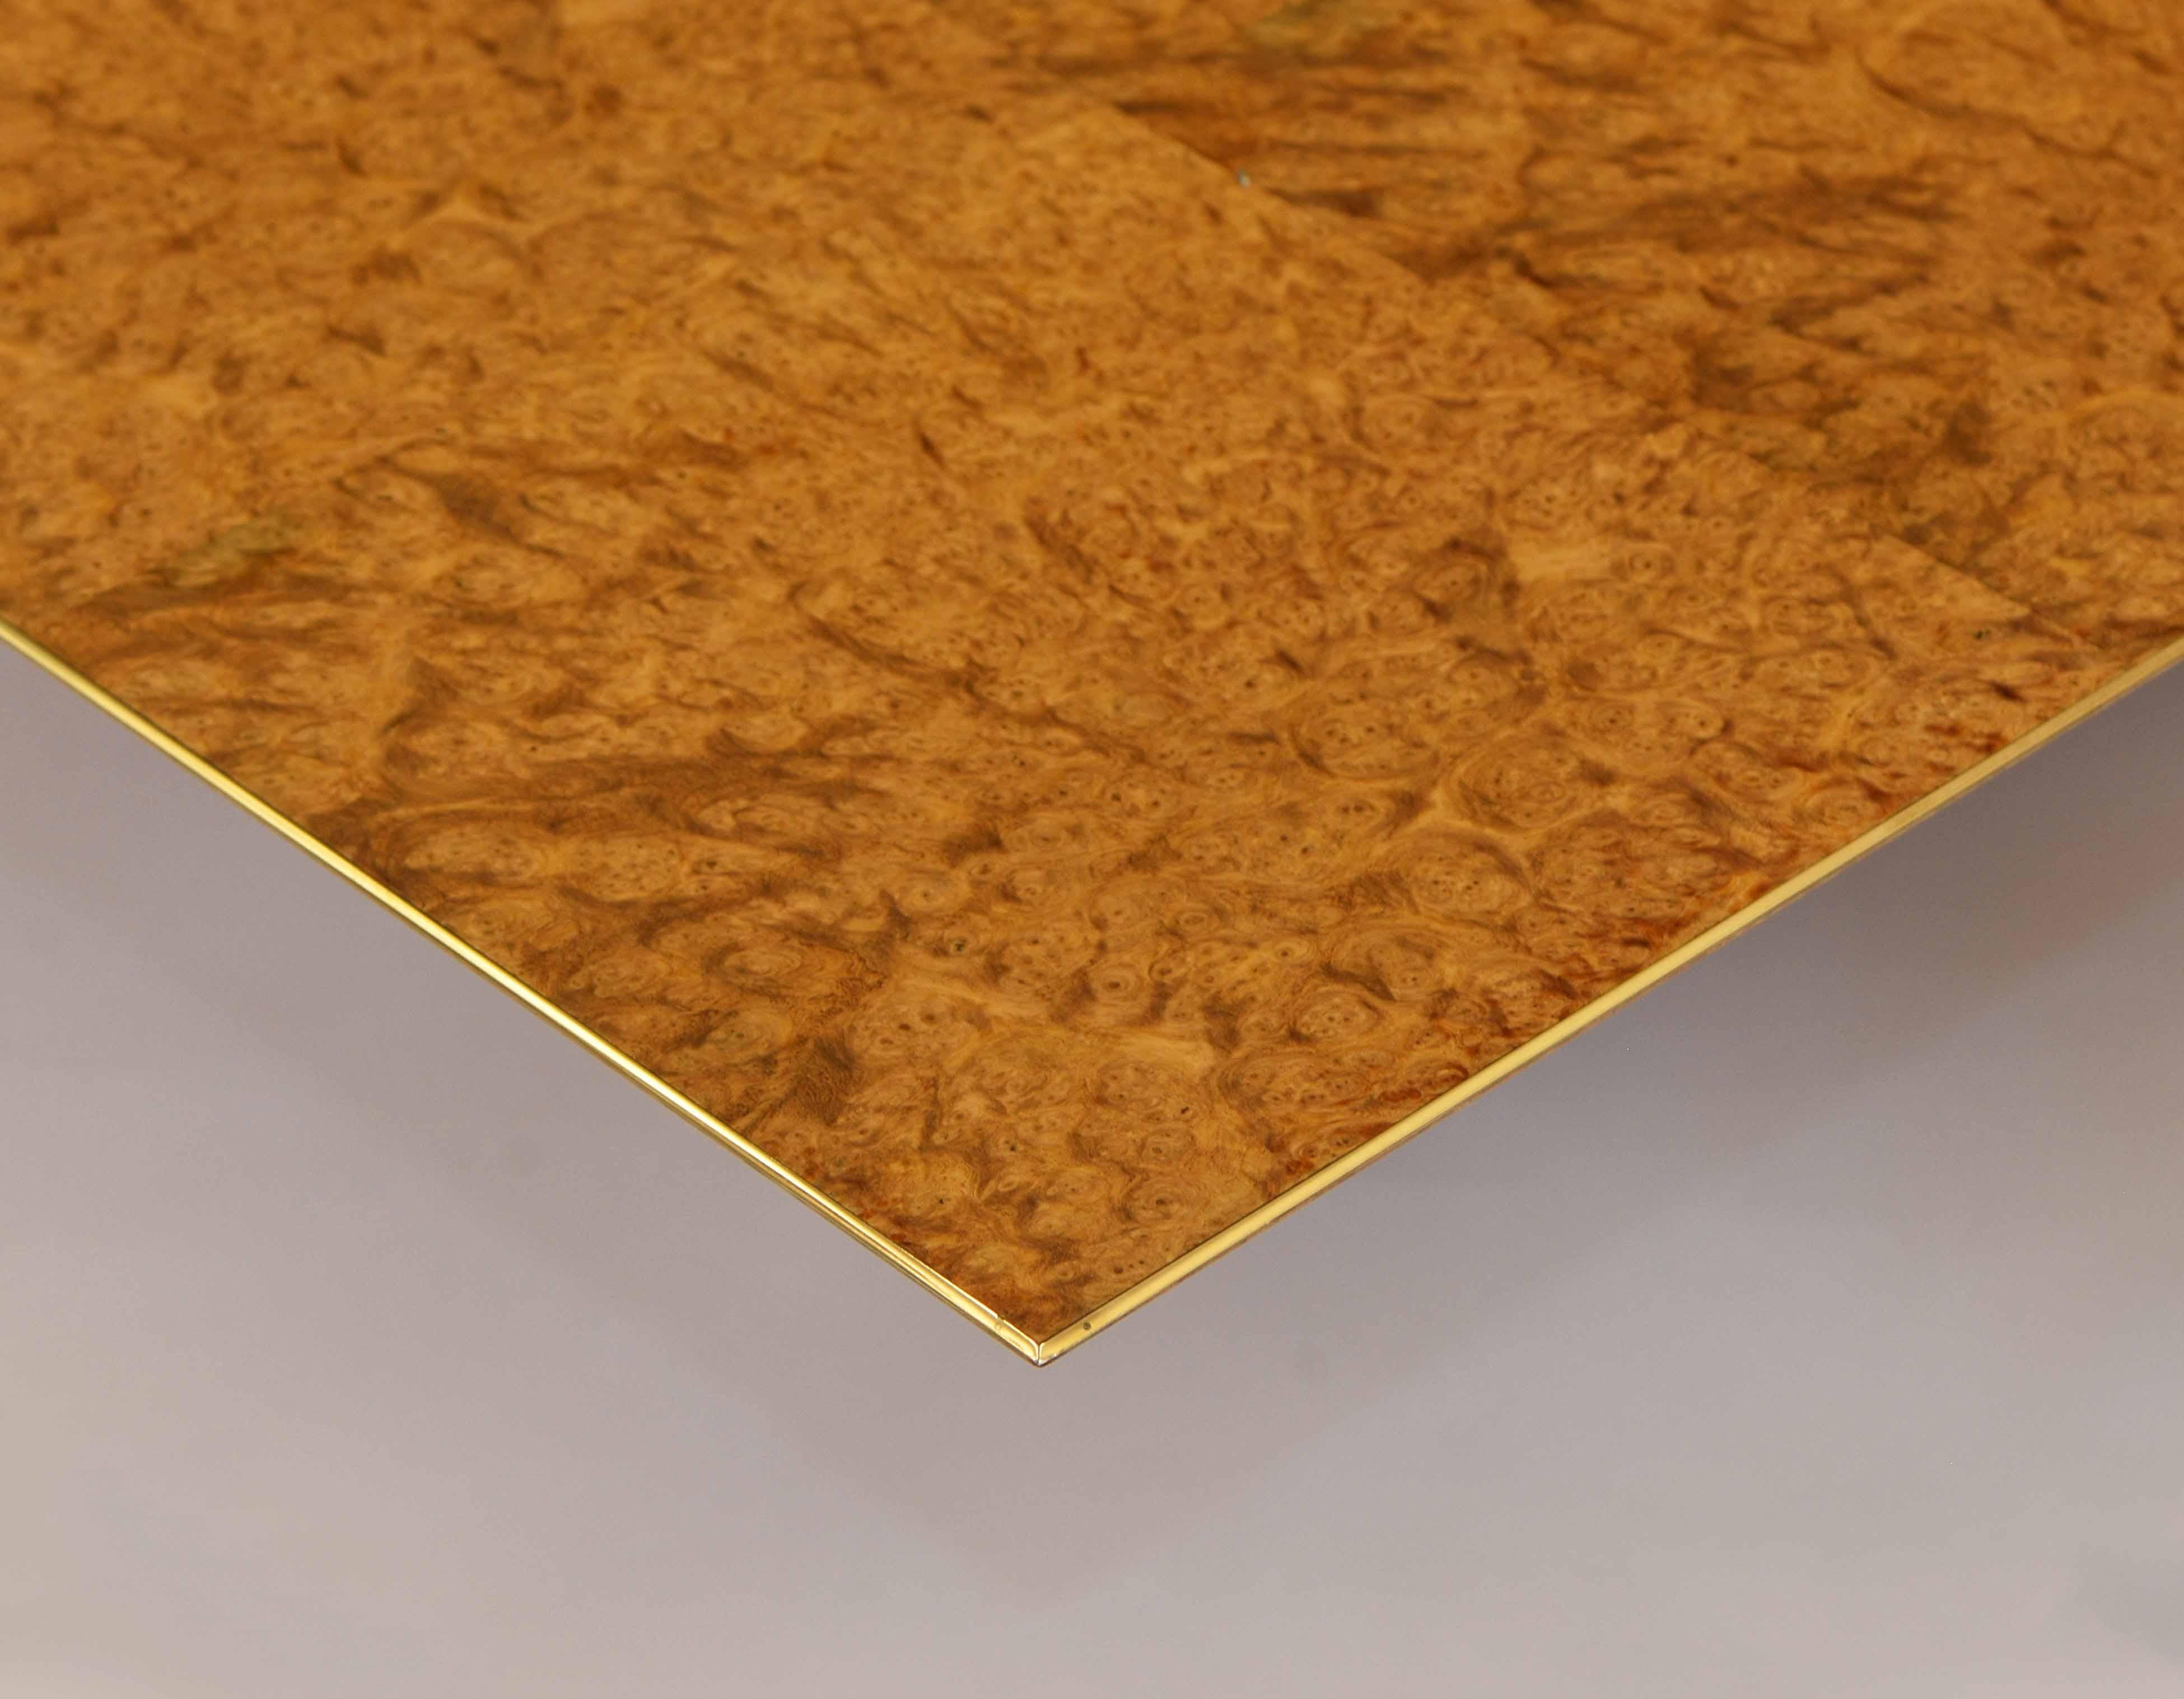 Une impressionnante table basse en bois exotique de ronce d'Amboyna, avec une bordure doublée d'or véritable et un insert central en or poinçonné par le fabricant. Atelier Silverlining - 1992.

Cette entreprise basée au Royaume-Uni crée des pièces